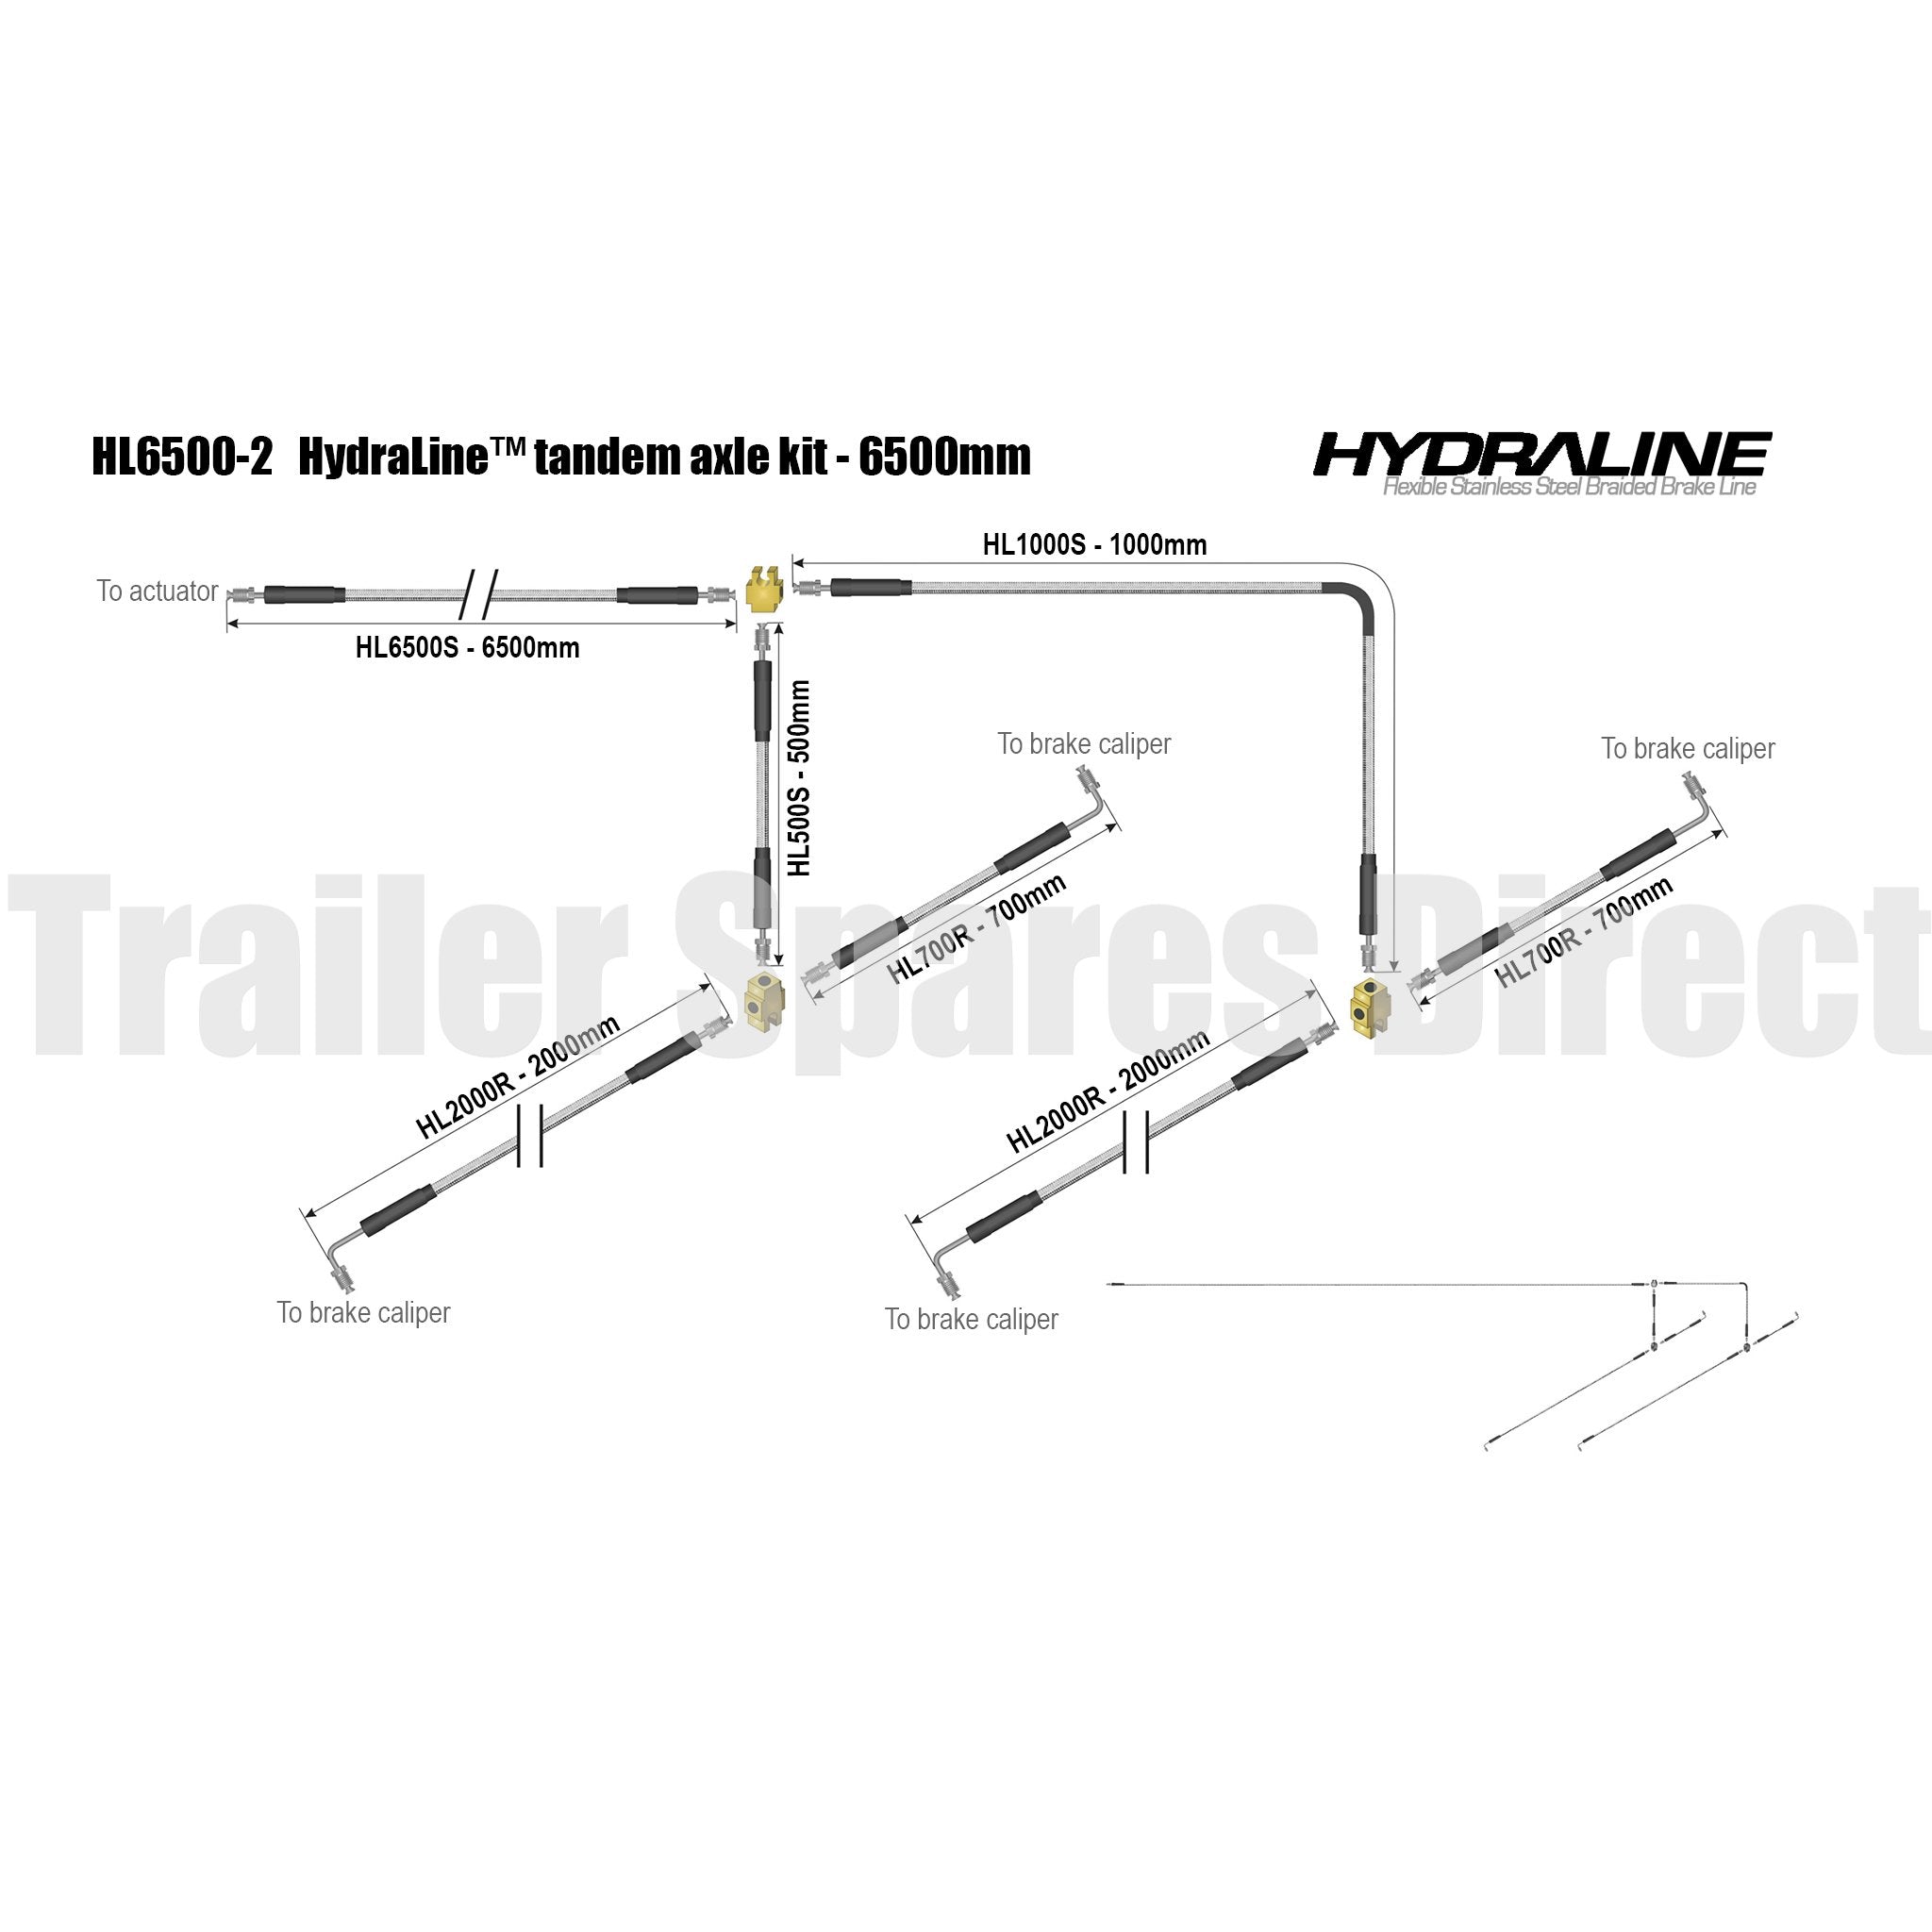 Hydraline kit 6500mm tandem axle diagram